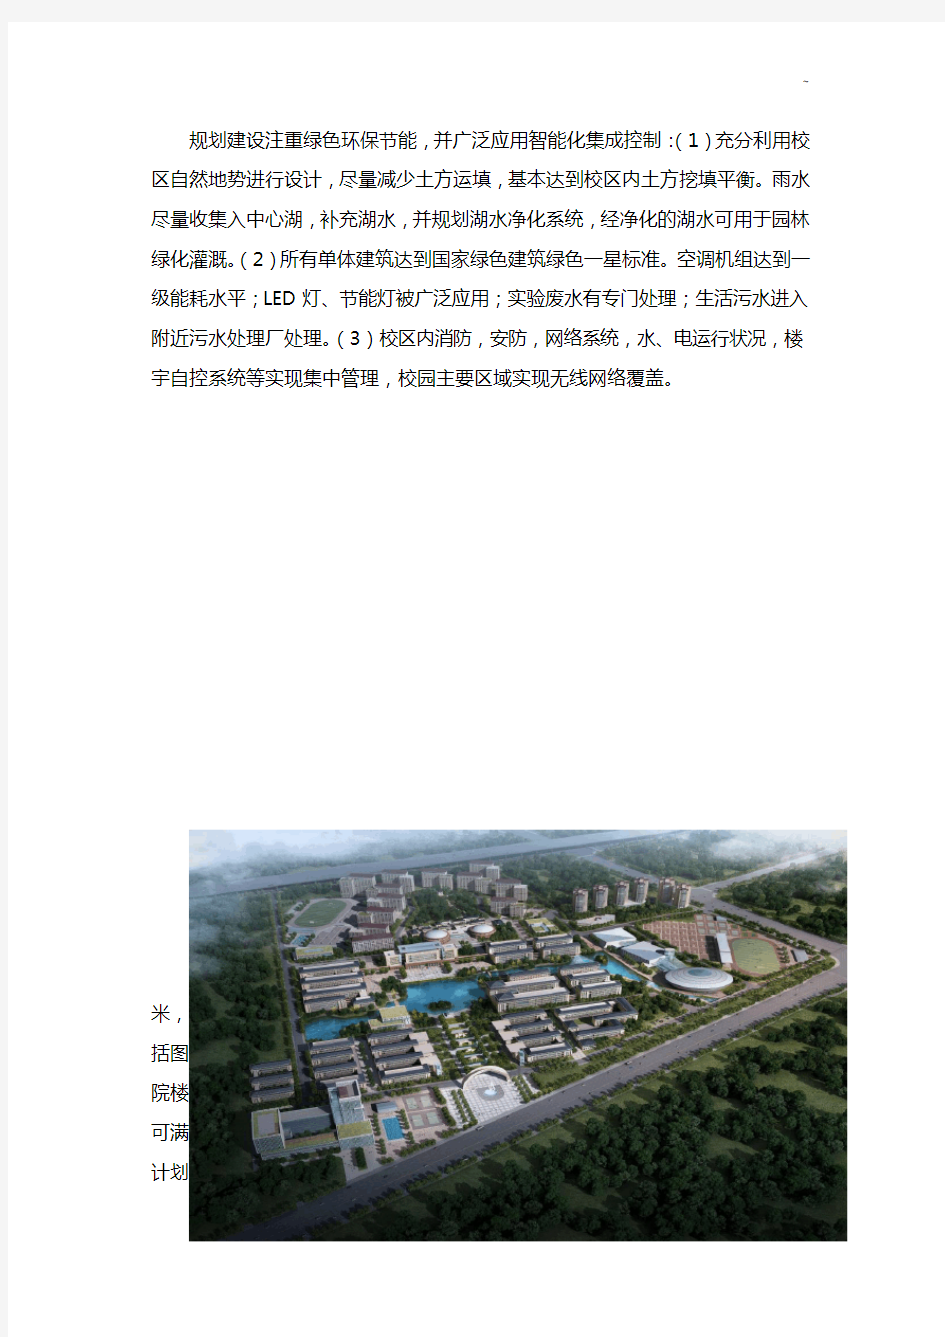 暨南大学新校区用地位于番禺区南村镇和新造镇的交界处